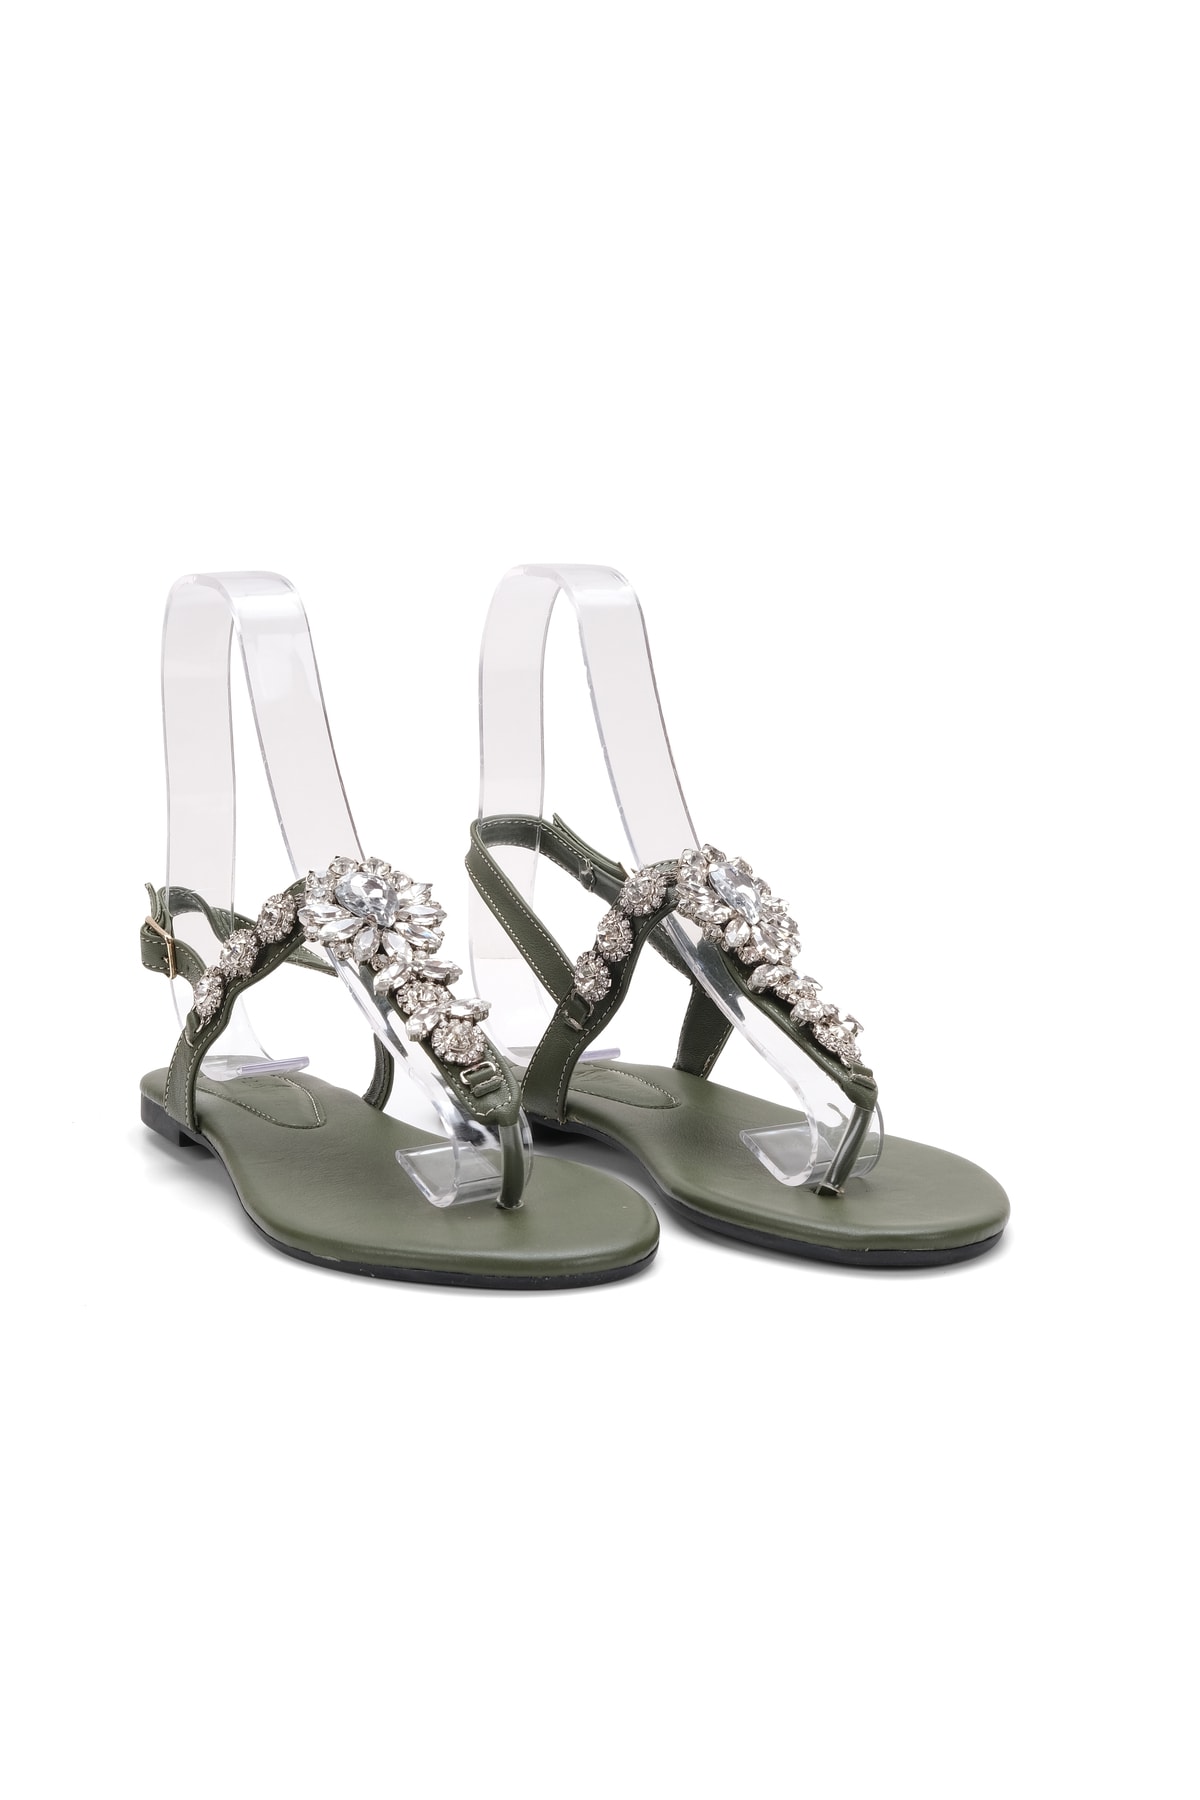 Oblavion Lavion Yeni Sezon Hakiki Deri Haki Yeşil Kristal Günlük Taşlı Kadın Sandalet